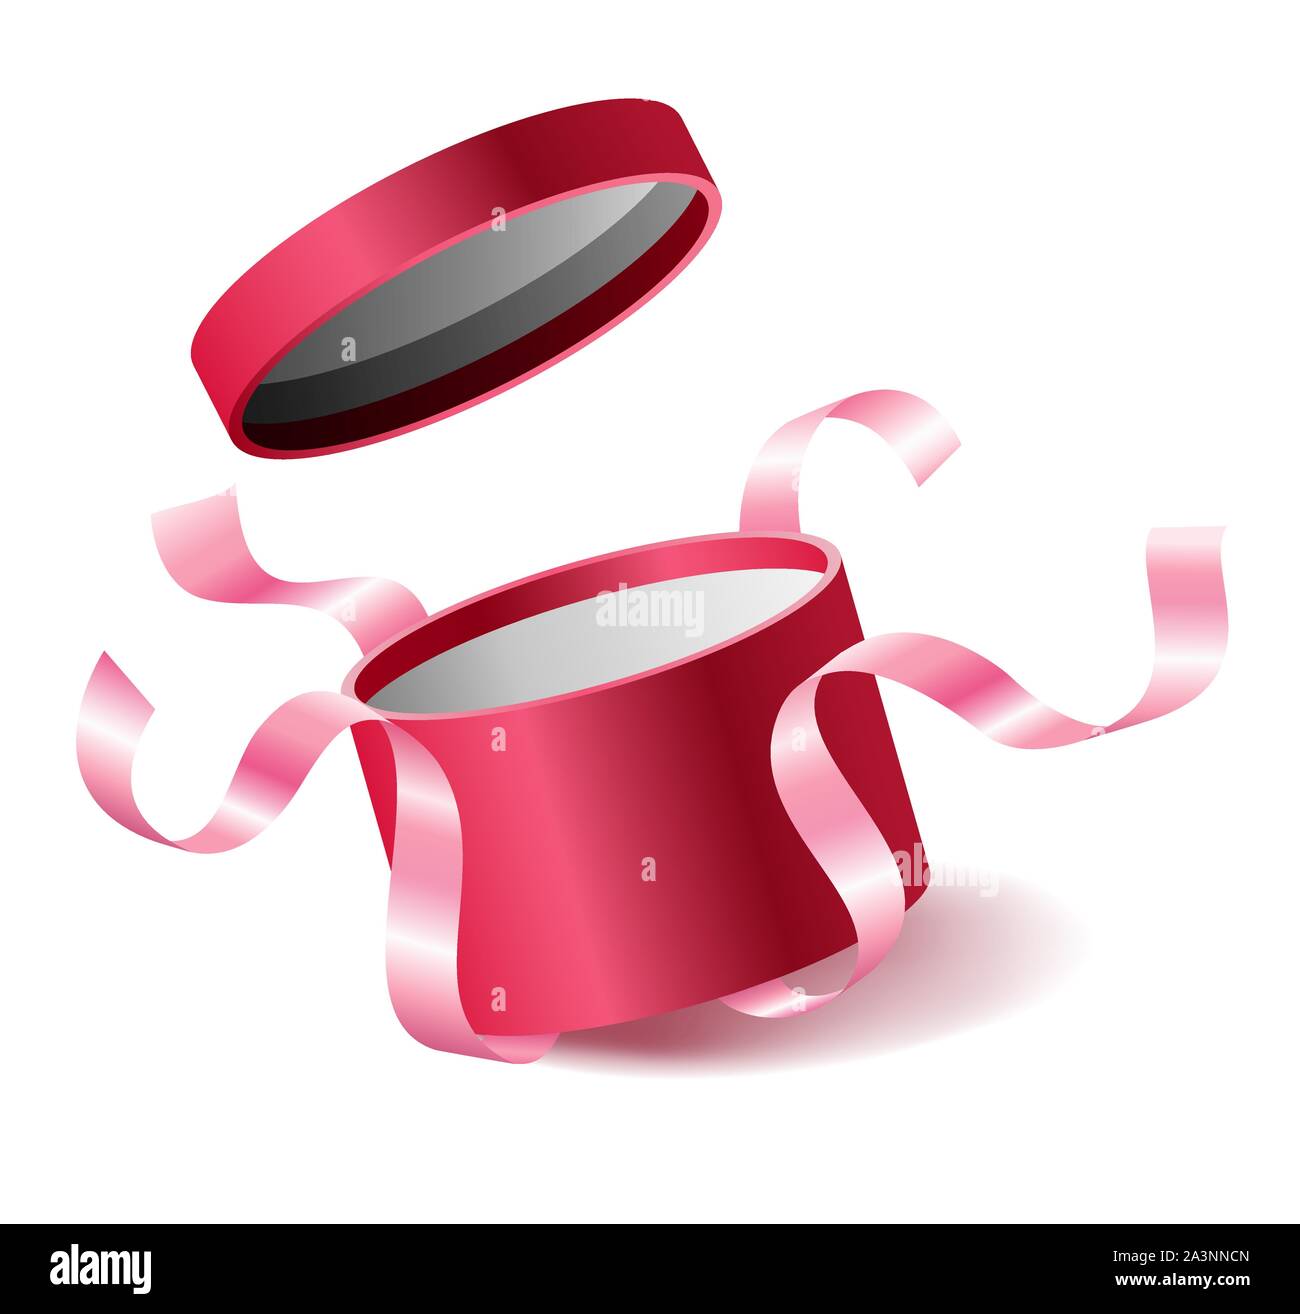 Rosa Rossa aperto 3D realistici round confezione regalo con battenti fuori il coperchio e i nastri e il luogo per il vostro testo, casella realistico illustrazione vettoriale. Illustrazione Vettoriale